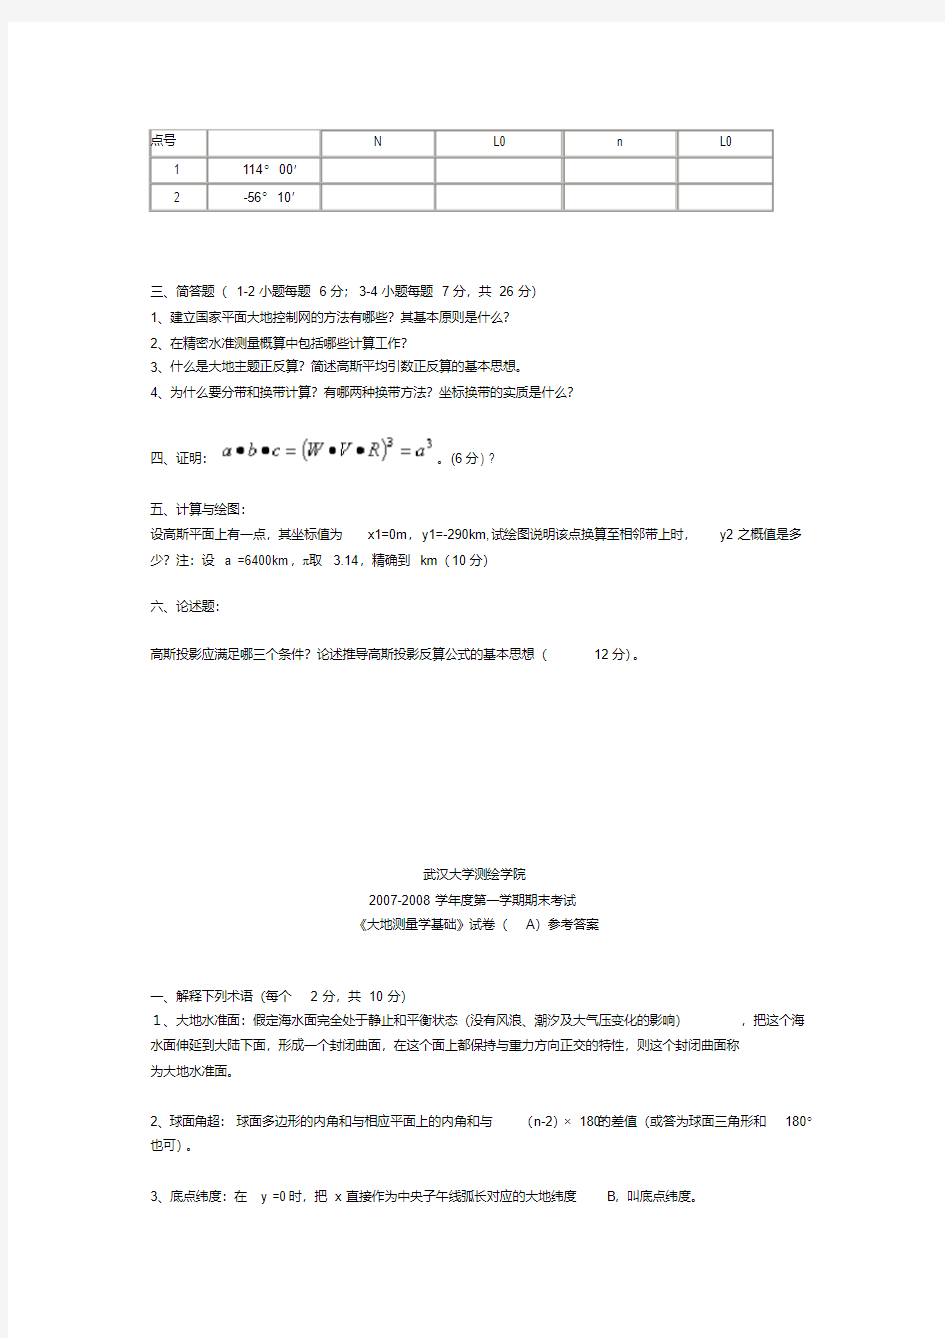 (完整版)大地测量学基础期末考试试卷A(中文)